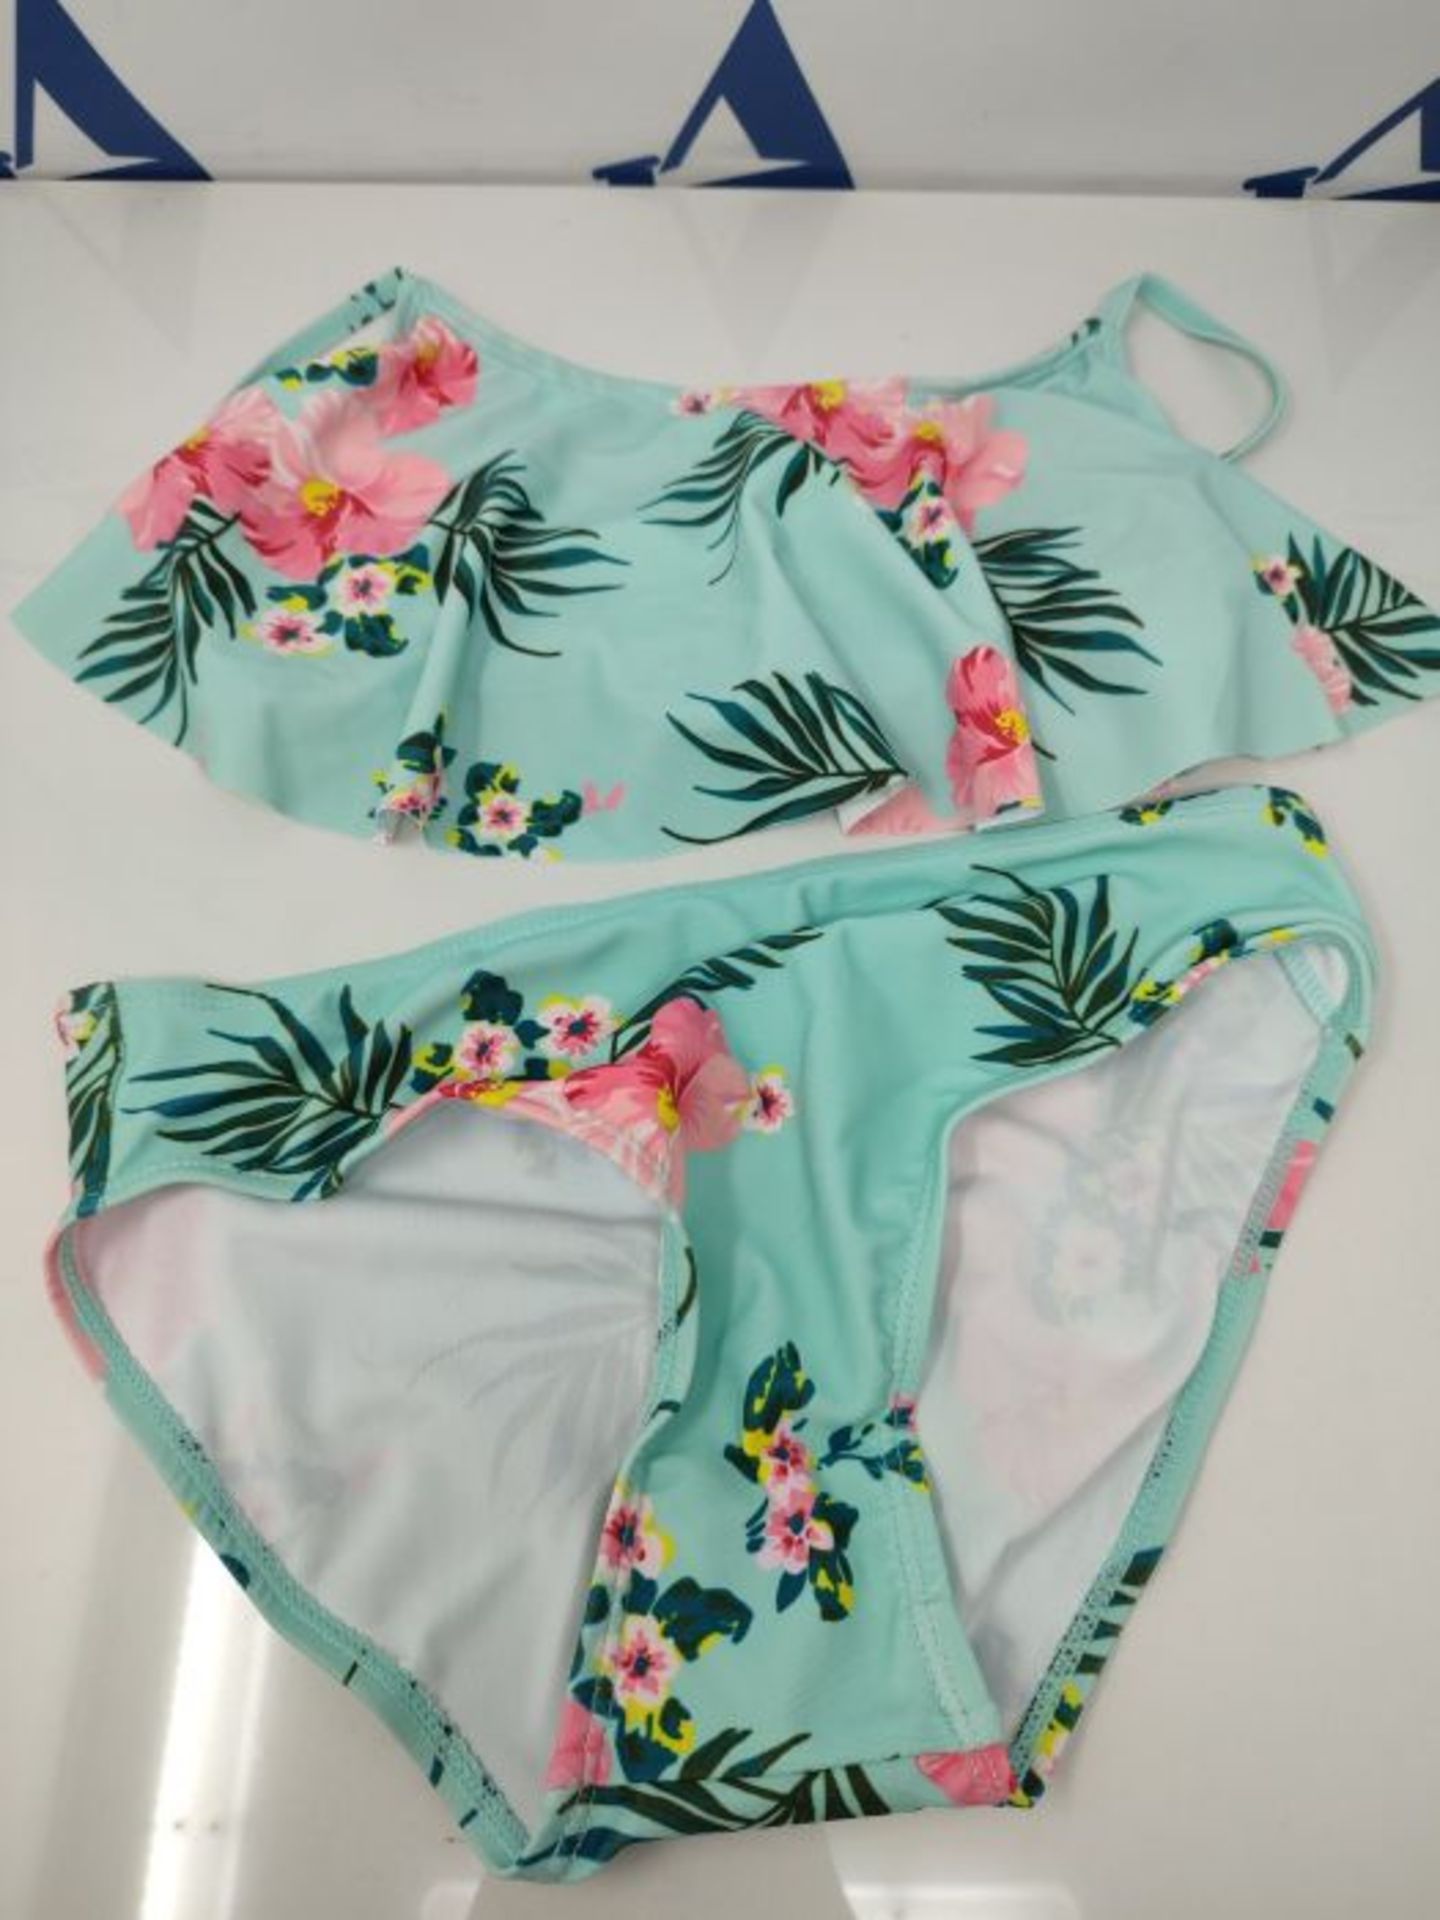 Moon Tree Girls' Bikini Swimsuit Ruffle Hawaiian Swimsuit Beach Rainbow 2-14 Years Old